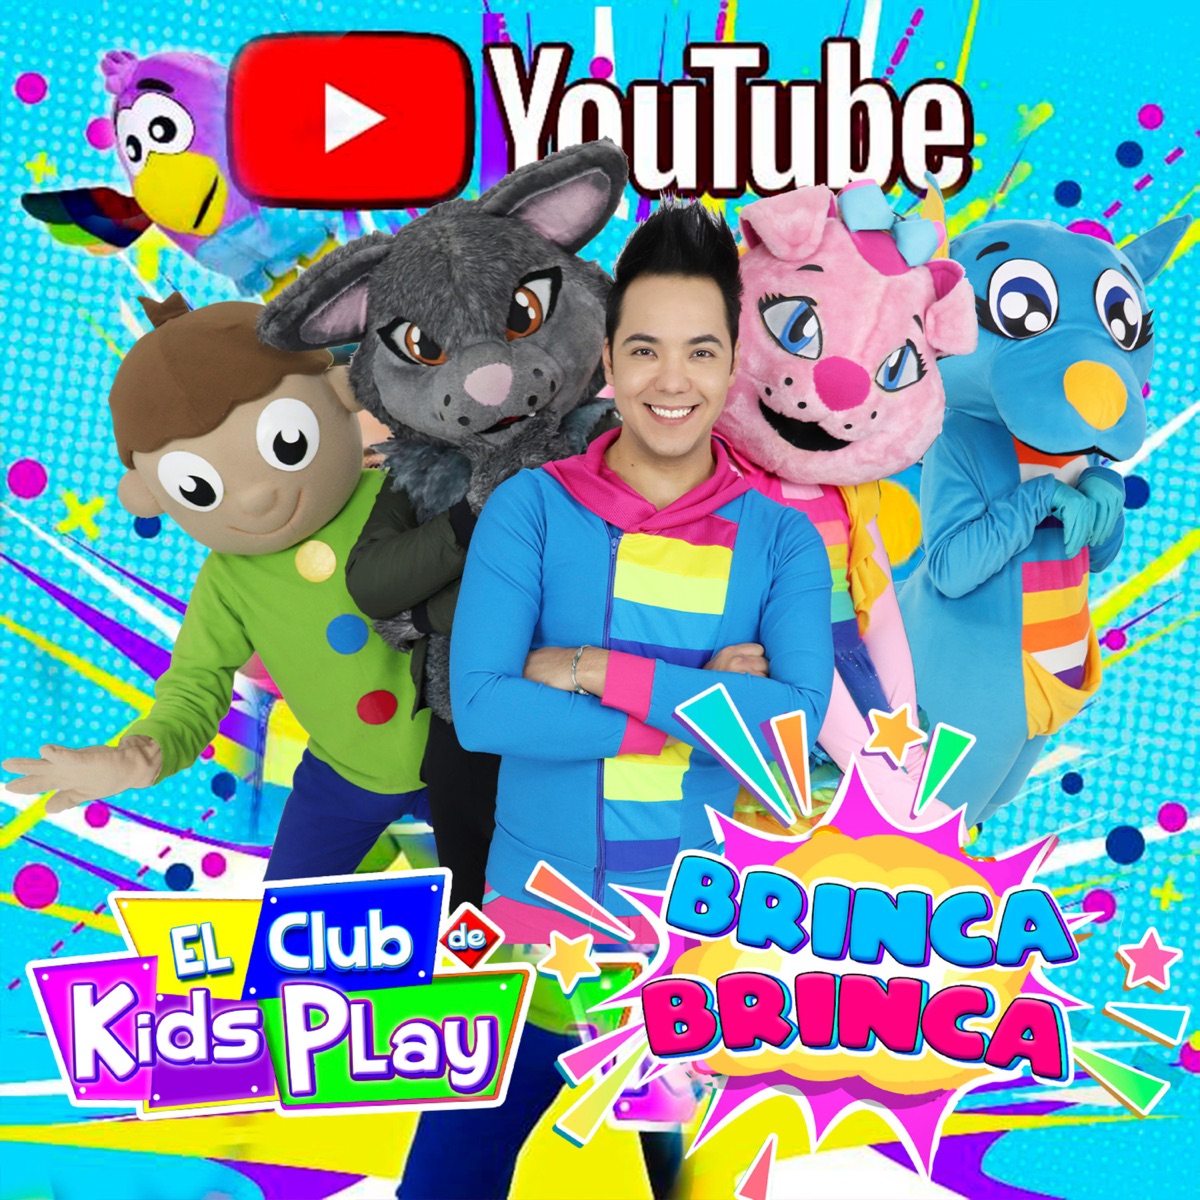 Party (El Club de kids Play) - Single by El Club de Kids Play on Apple Music